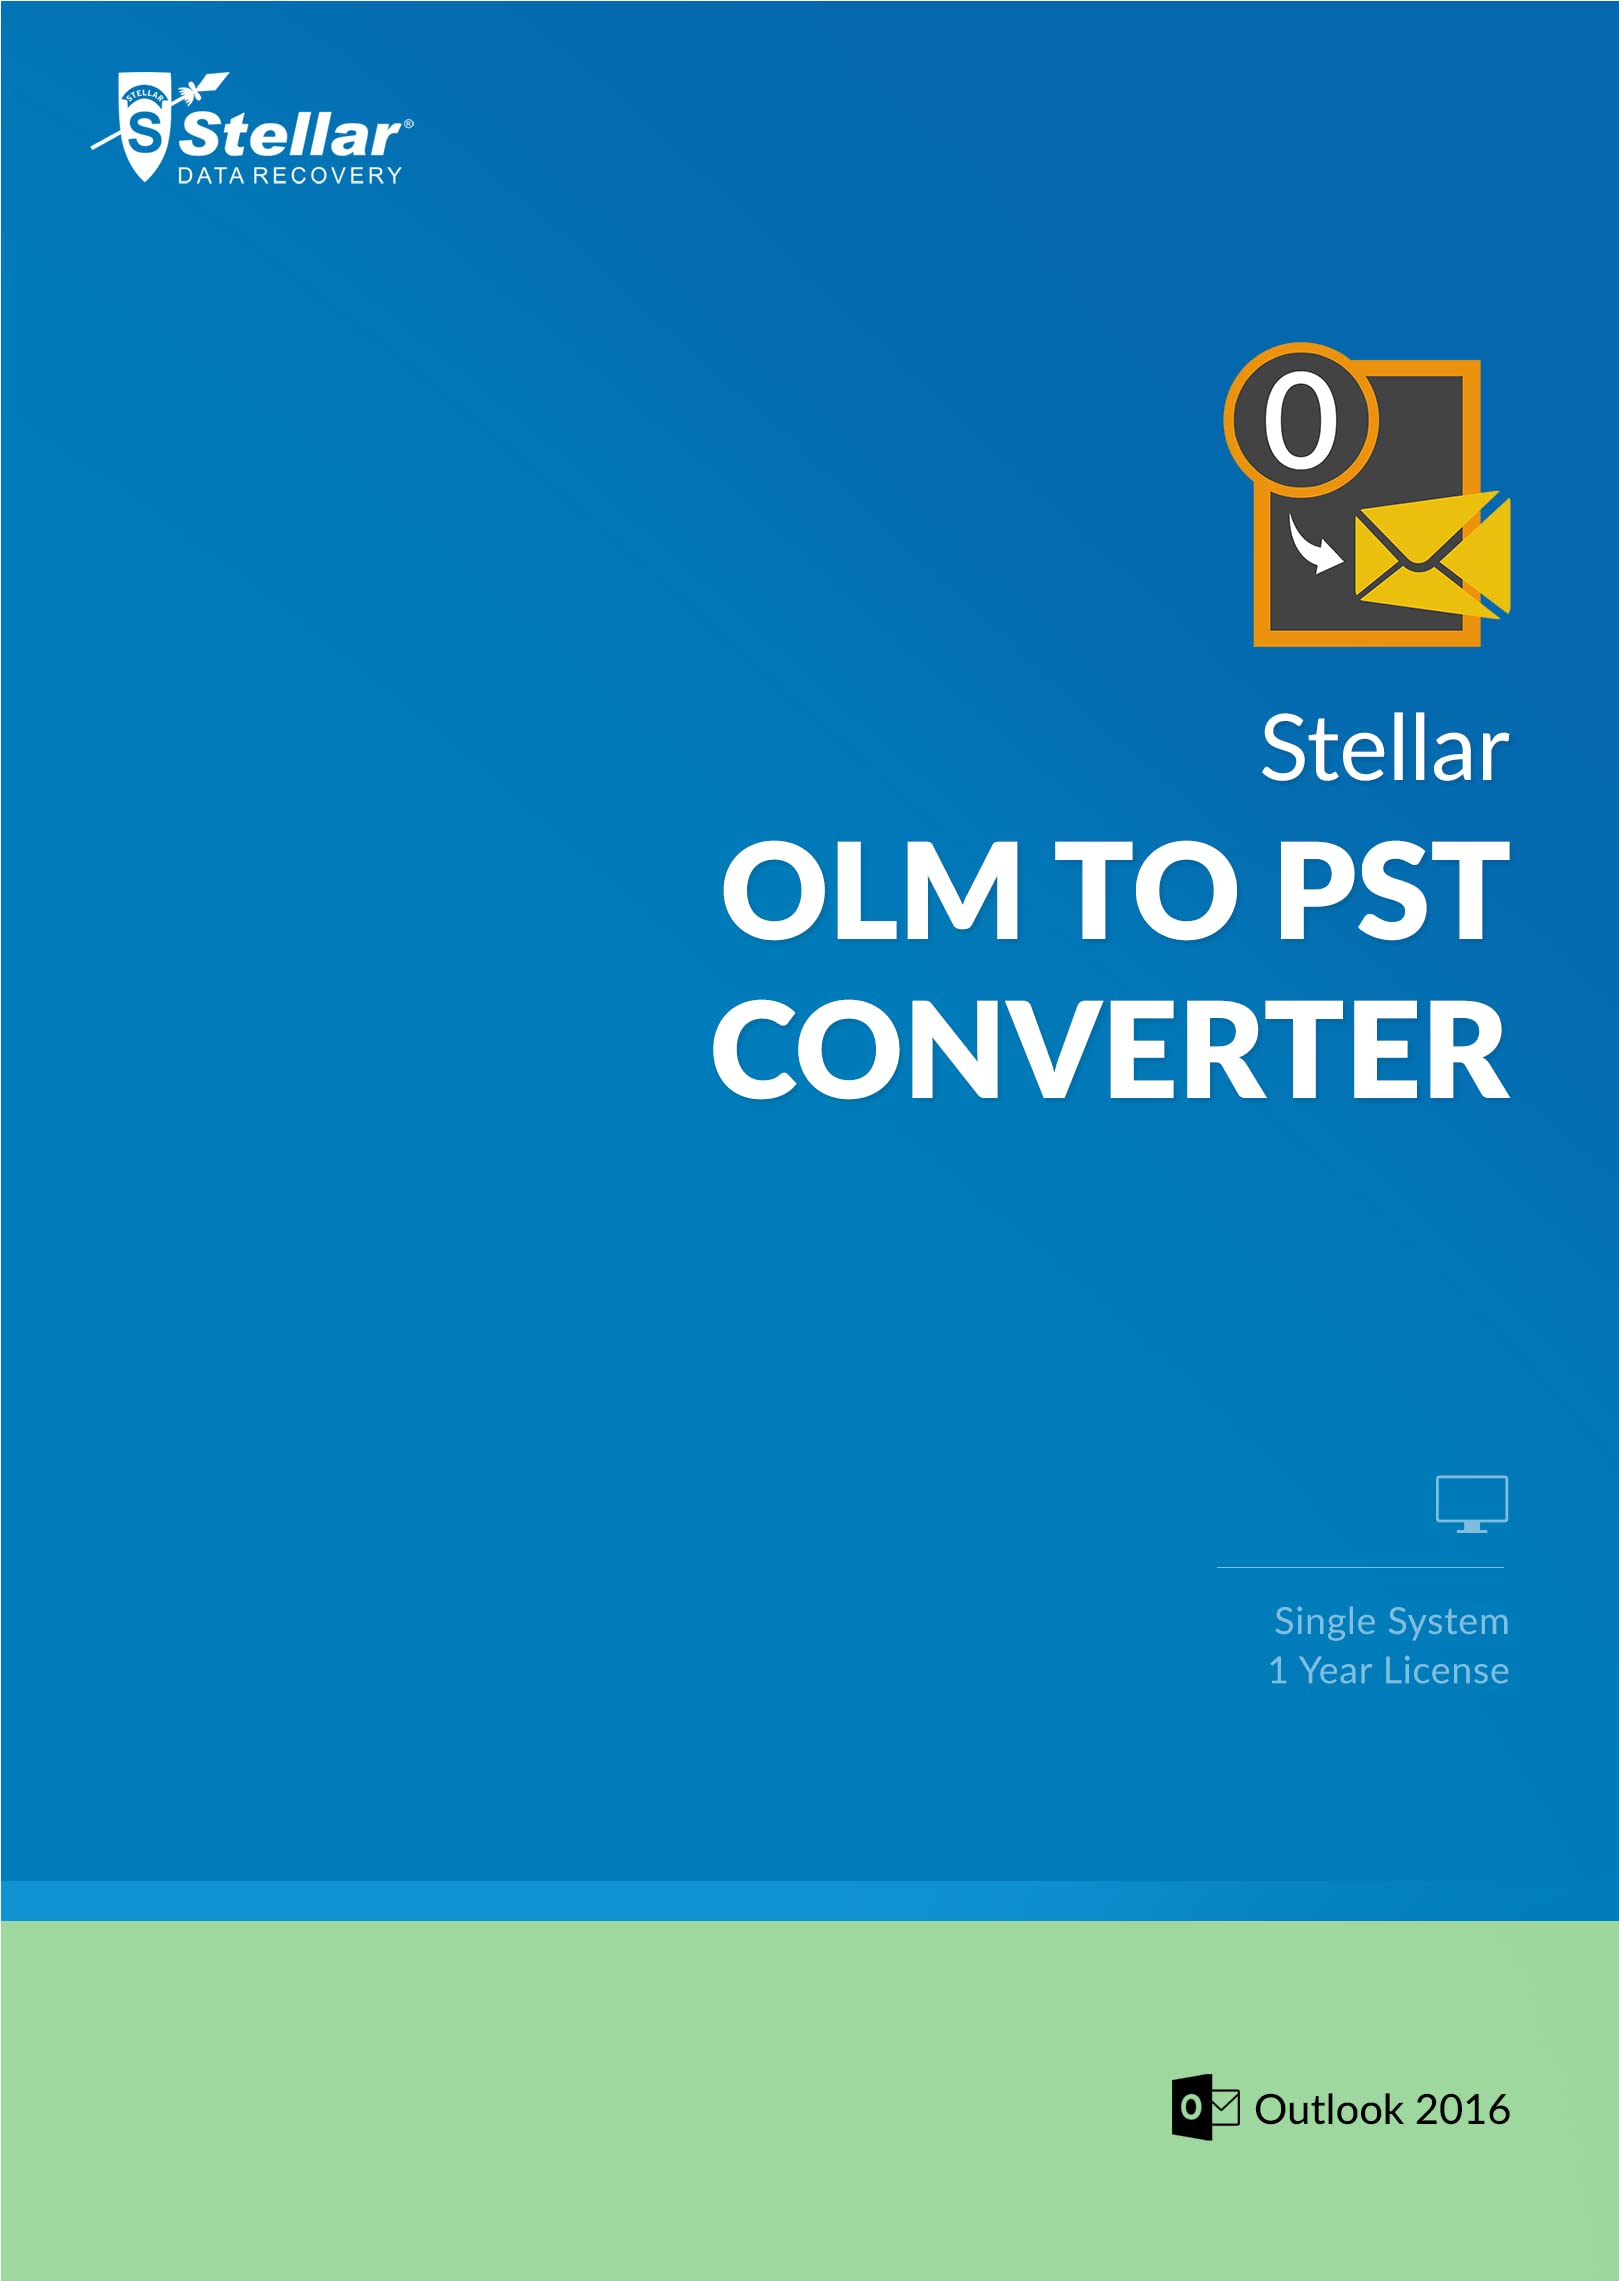 Stellar OLM to PST Converter V3.0 [Download]